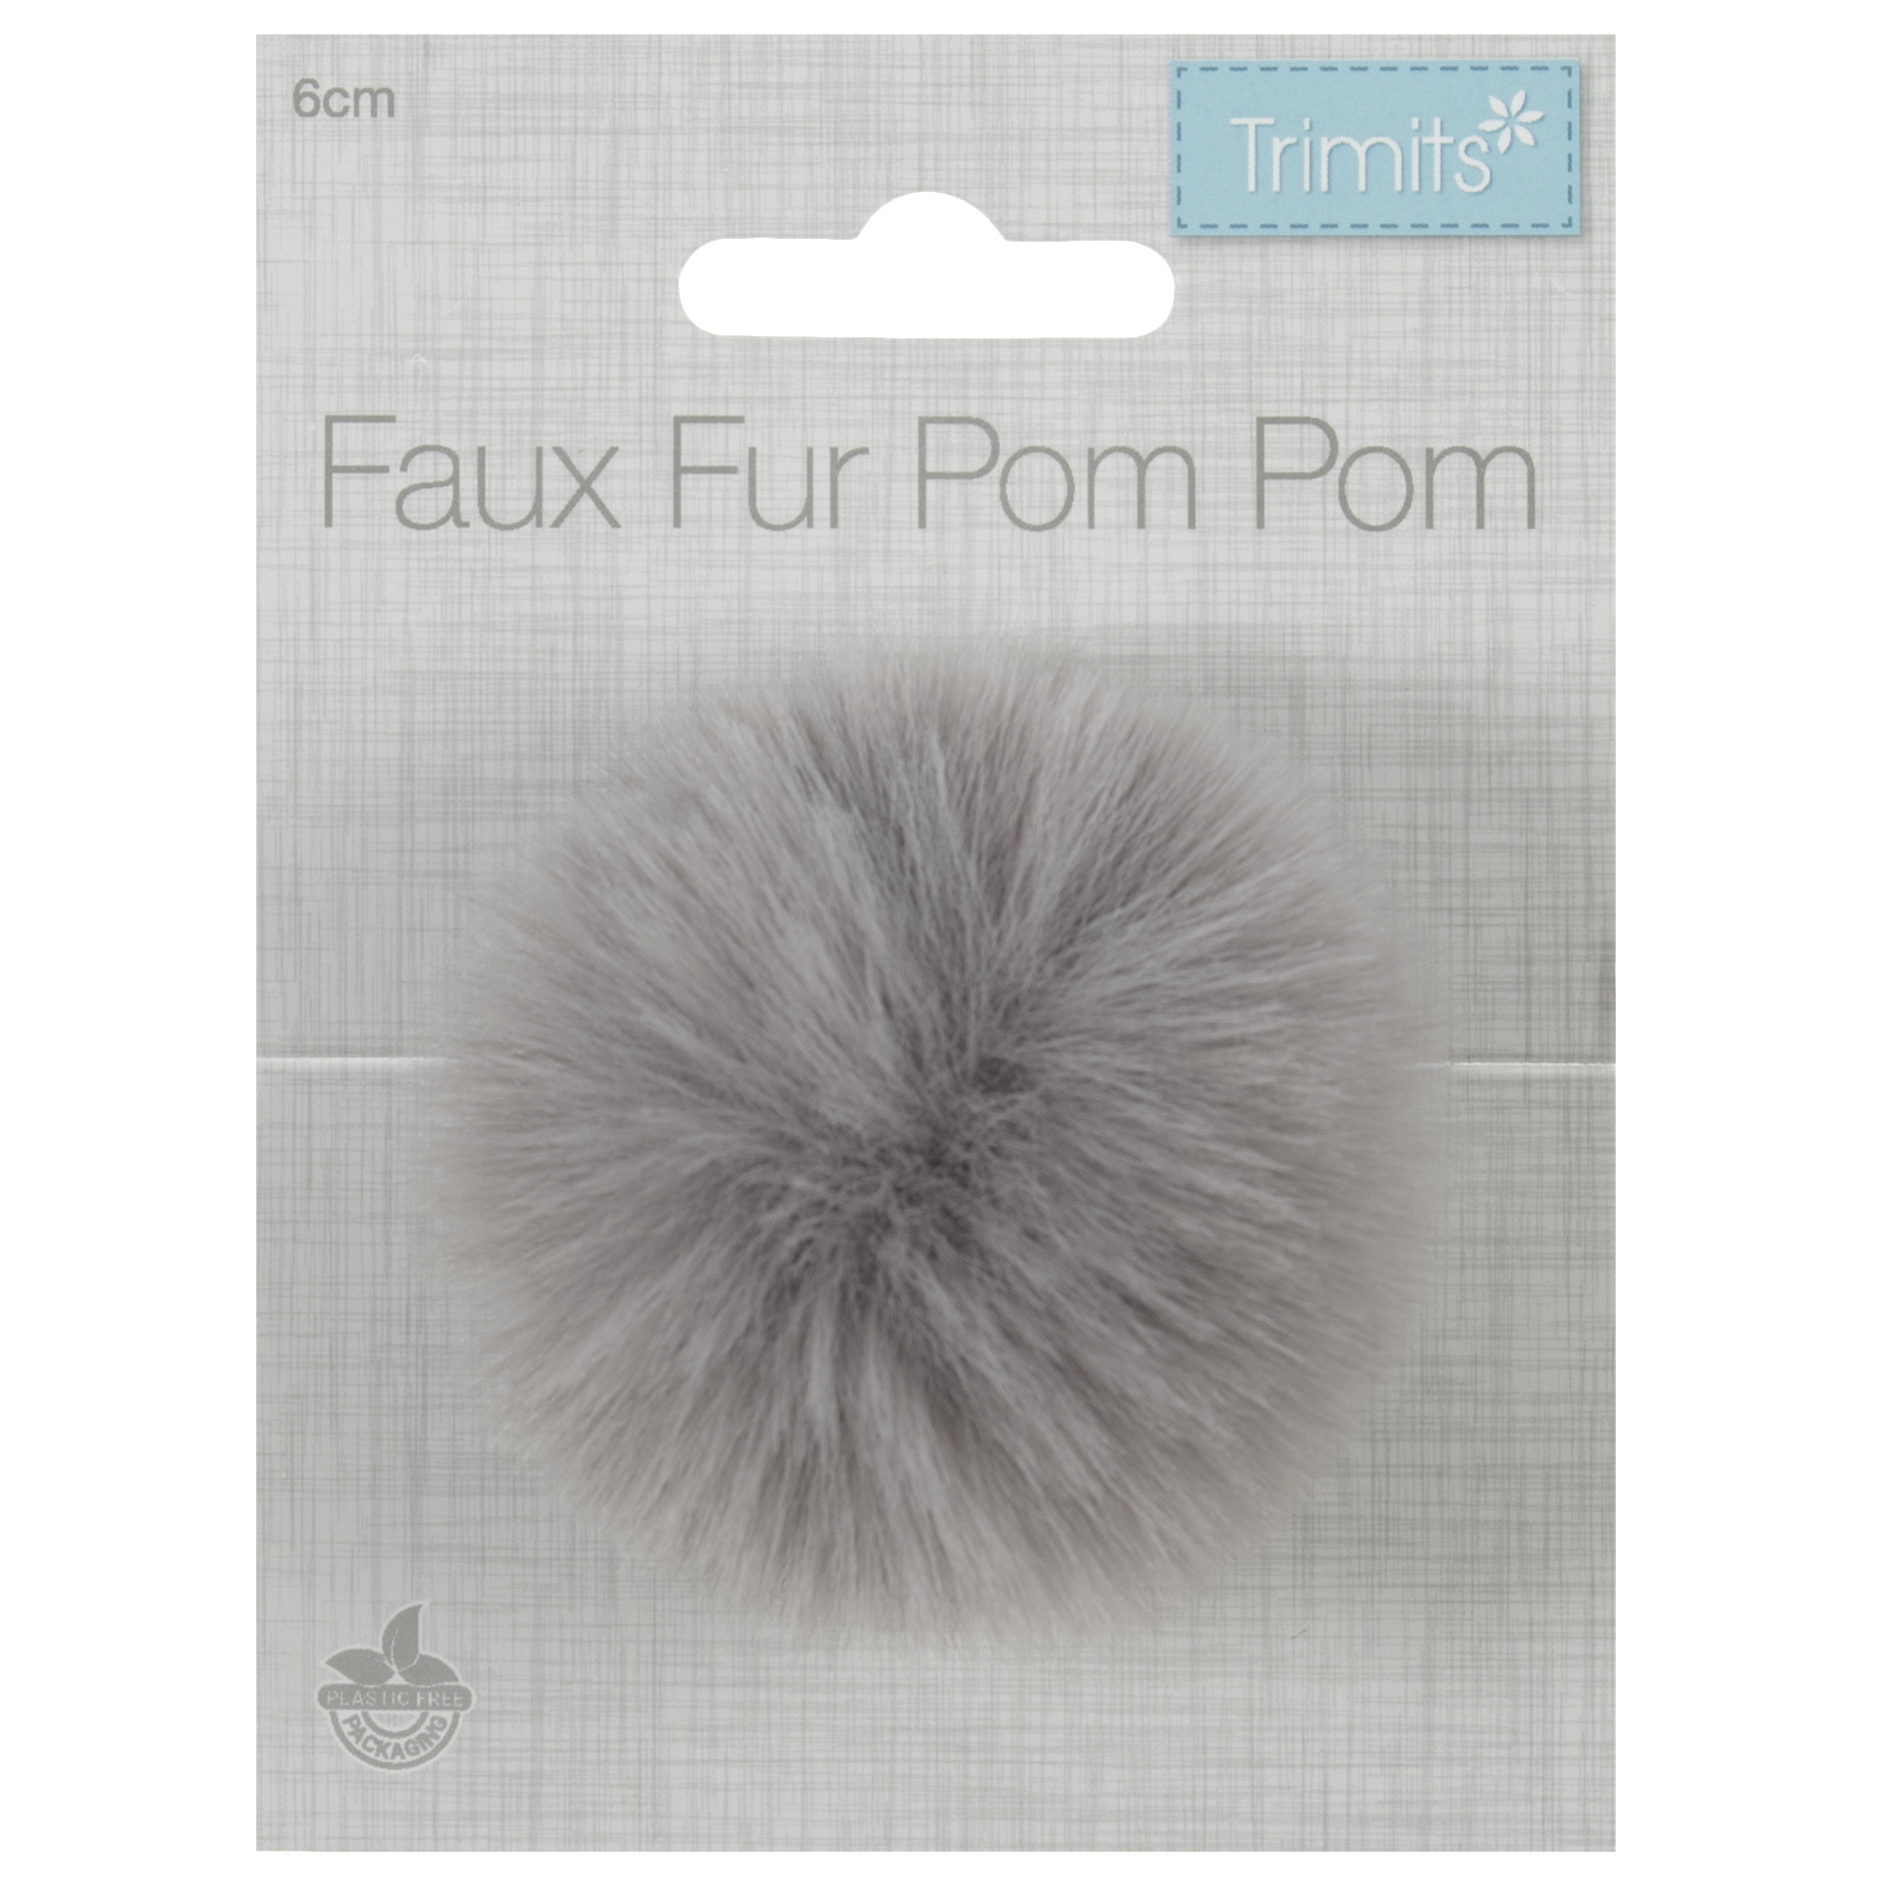 Trimits Faux Fur Pom Pom - Mink (6cm)